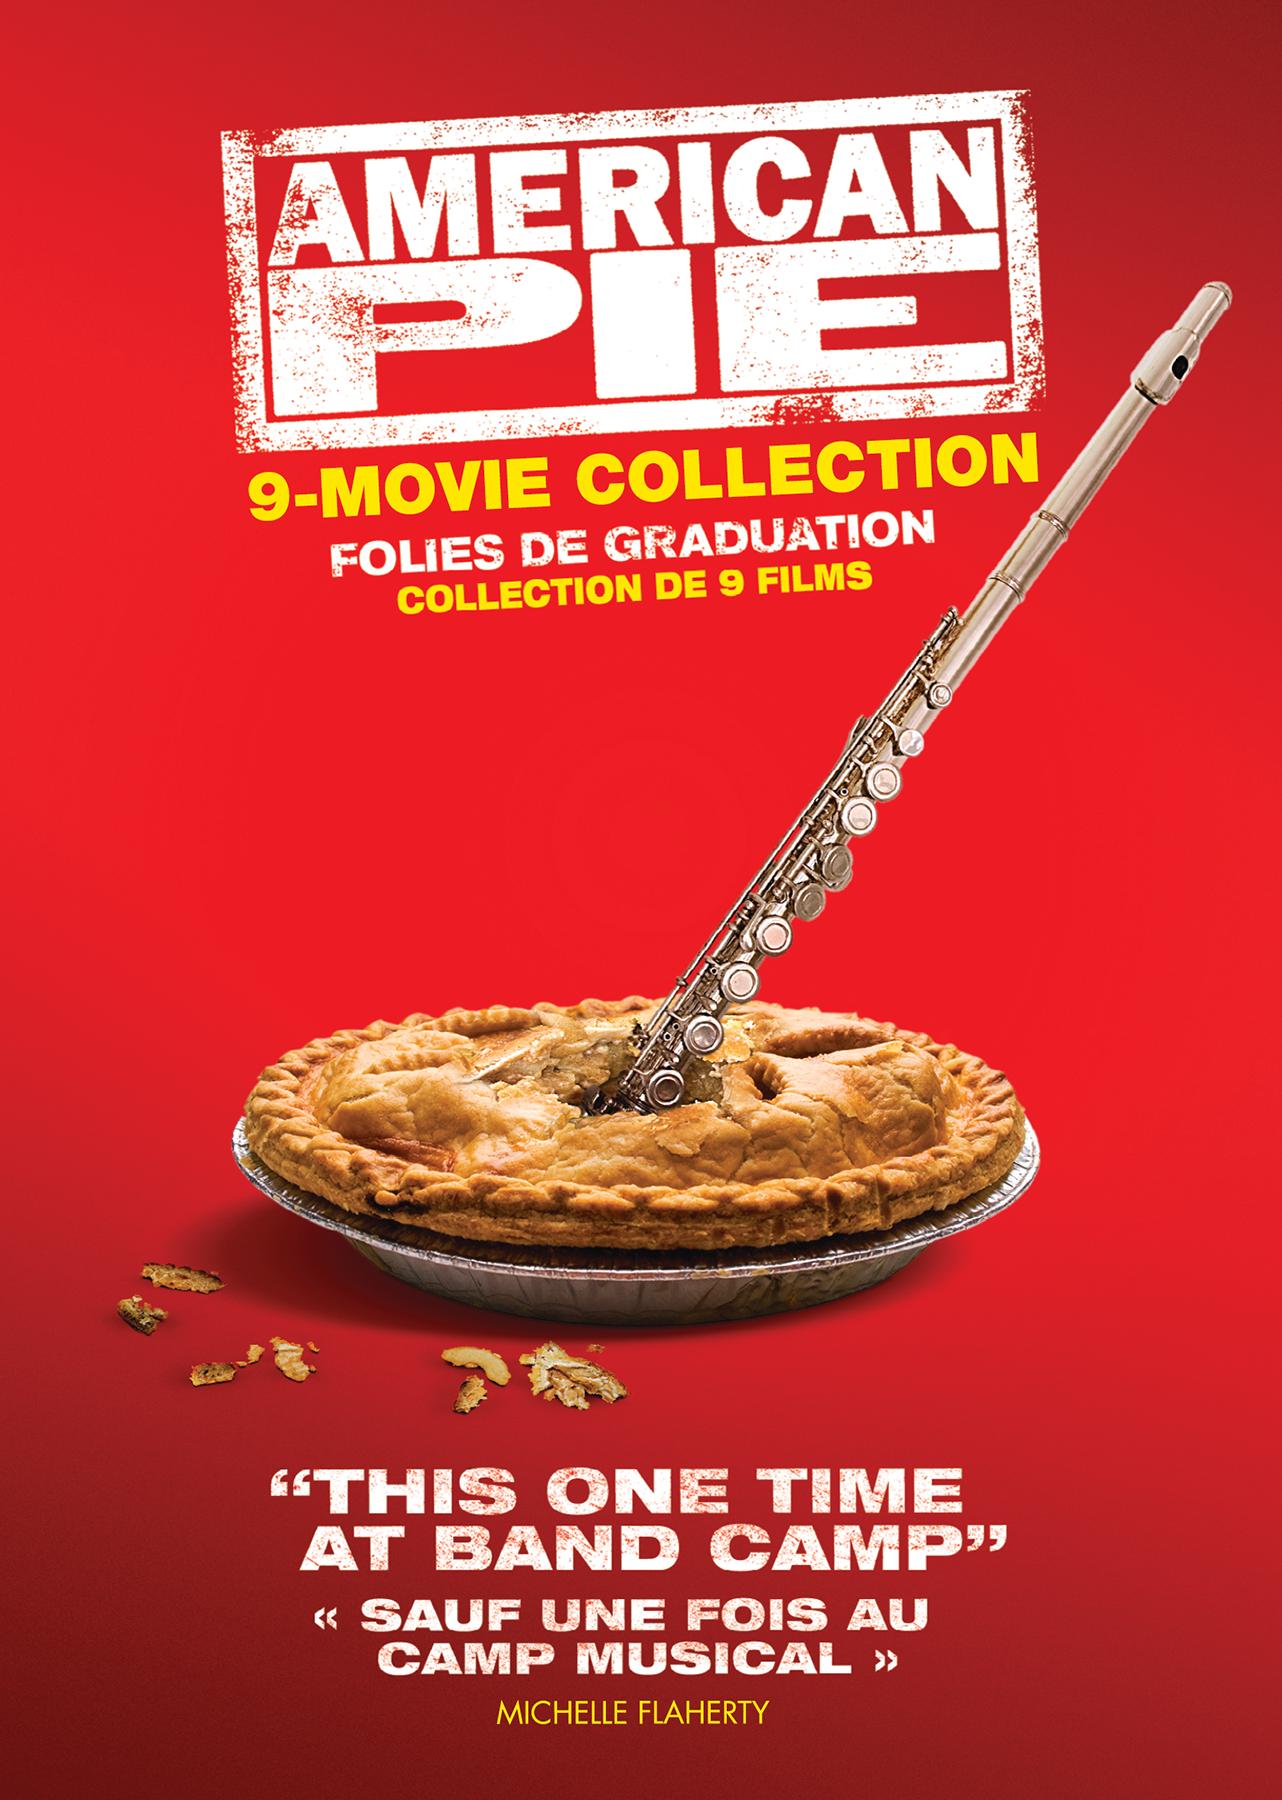 American Pie FULL VINTAGE MOVIE